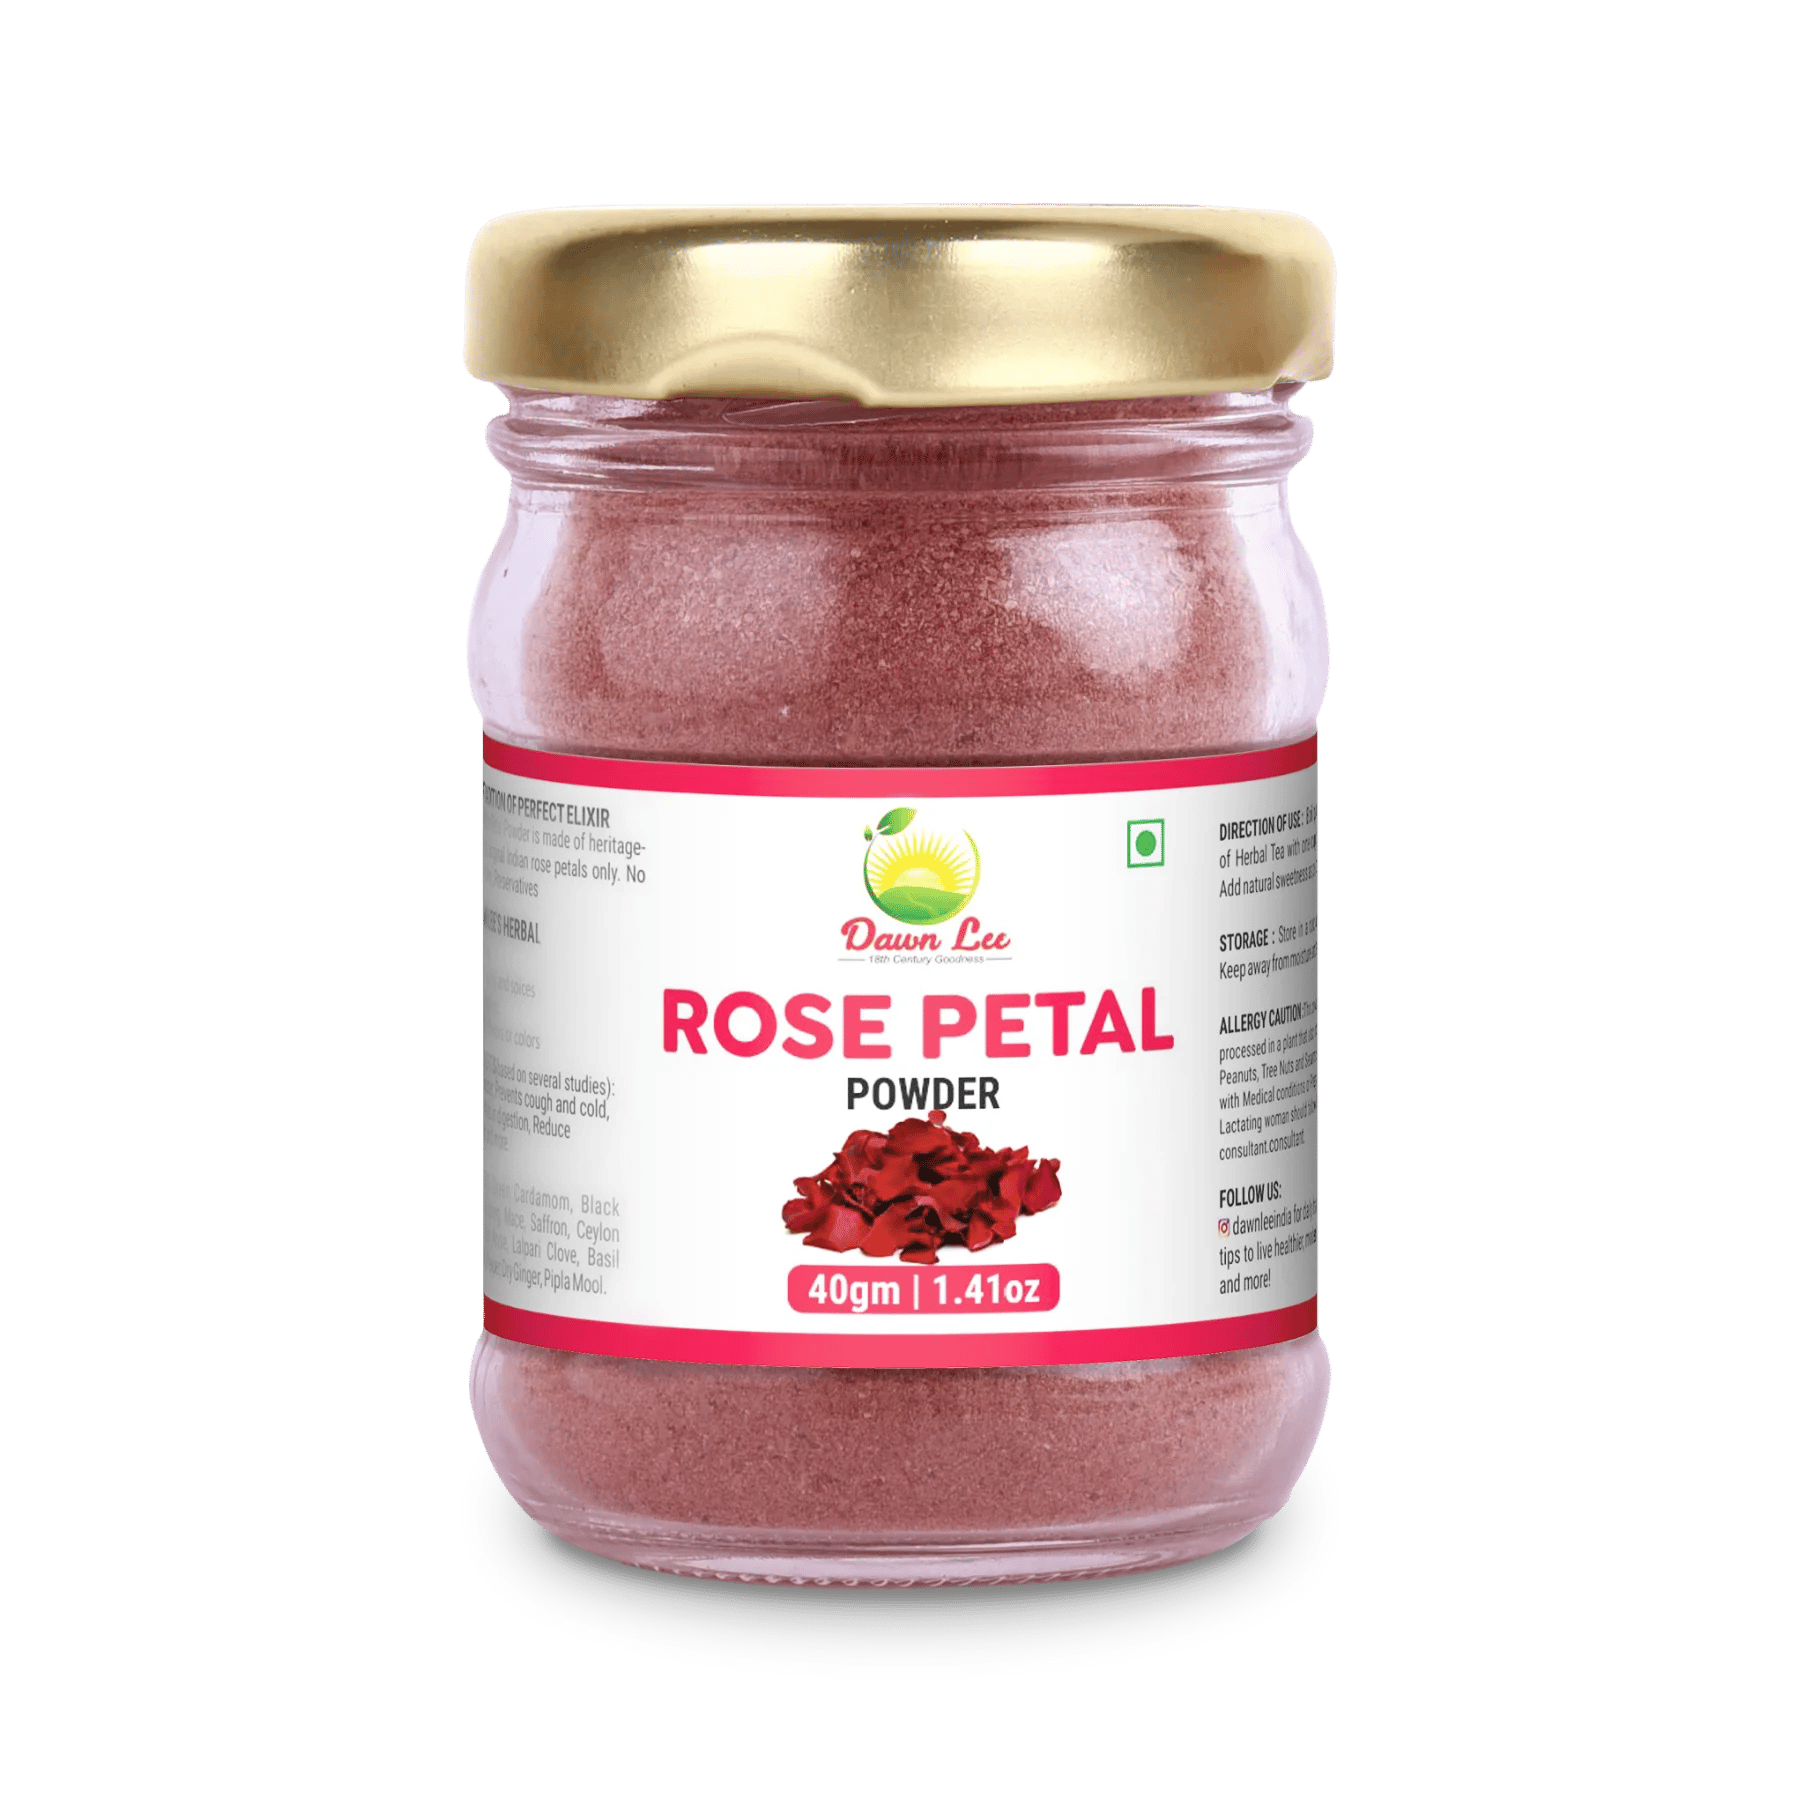 Damask Rose Petal Powder 